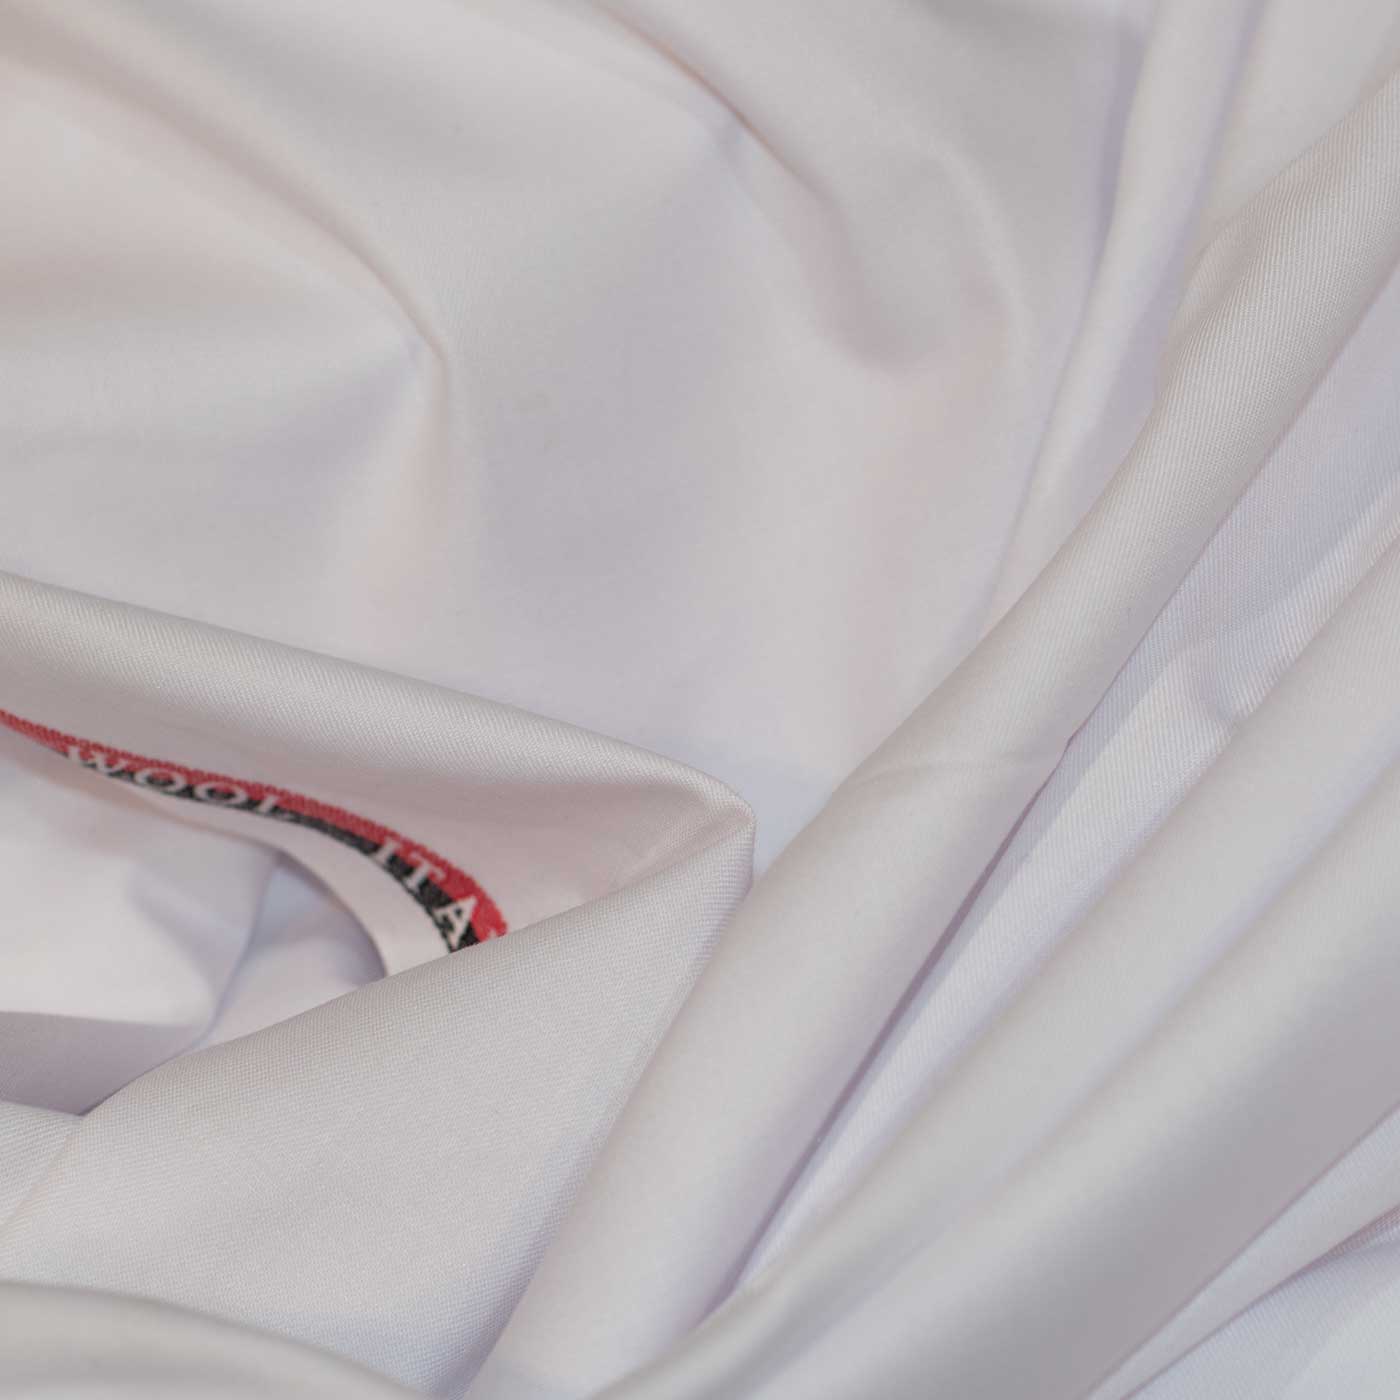 White Cashmere Fabric